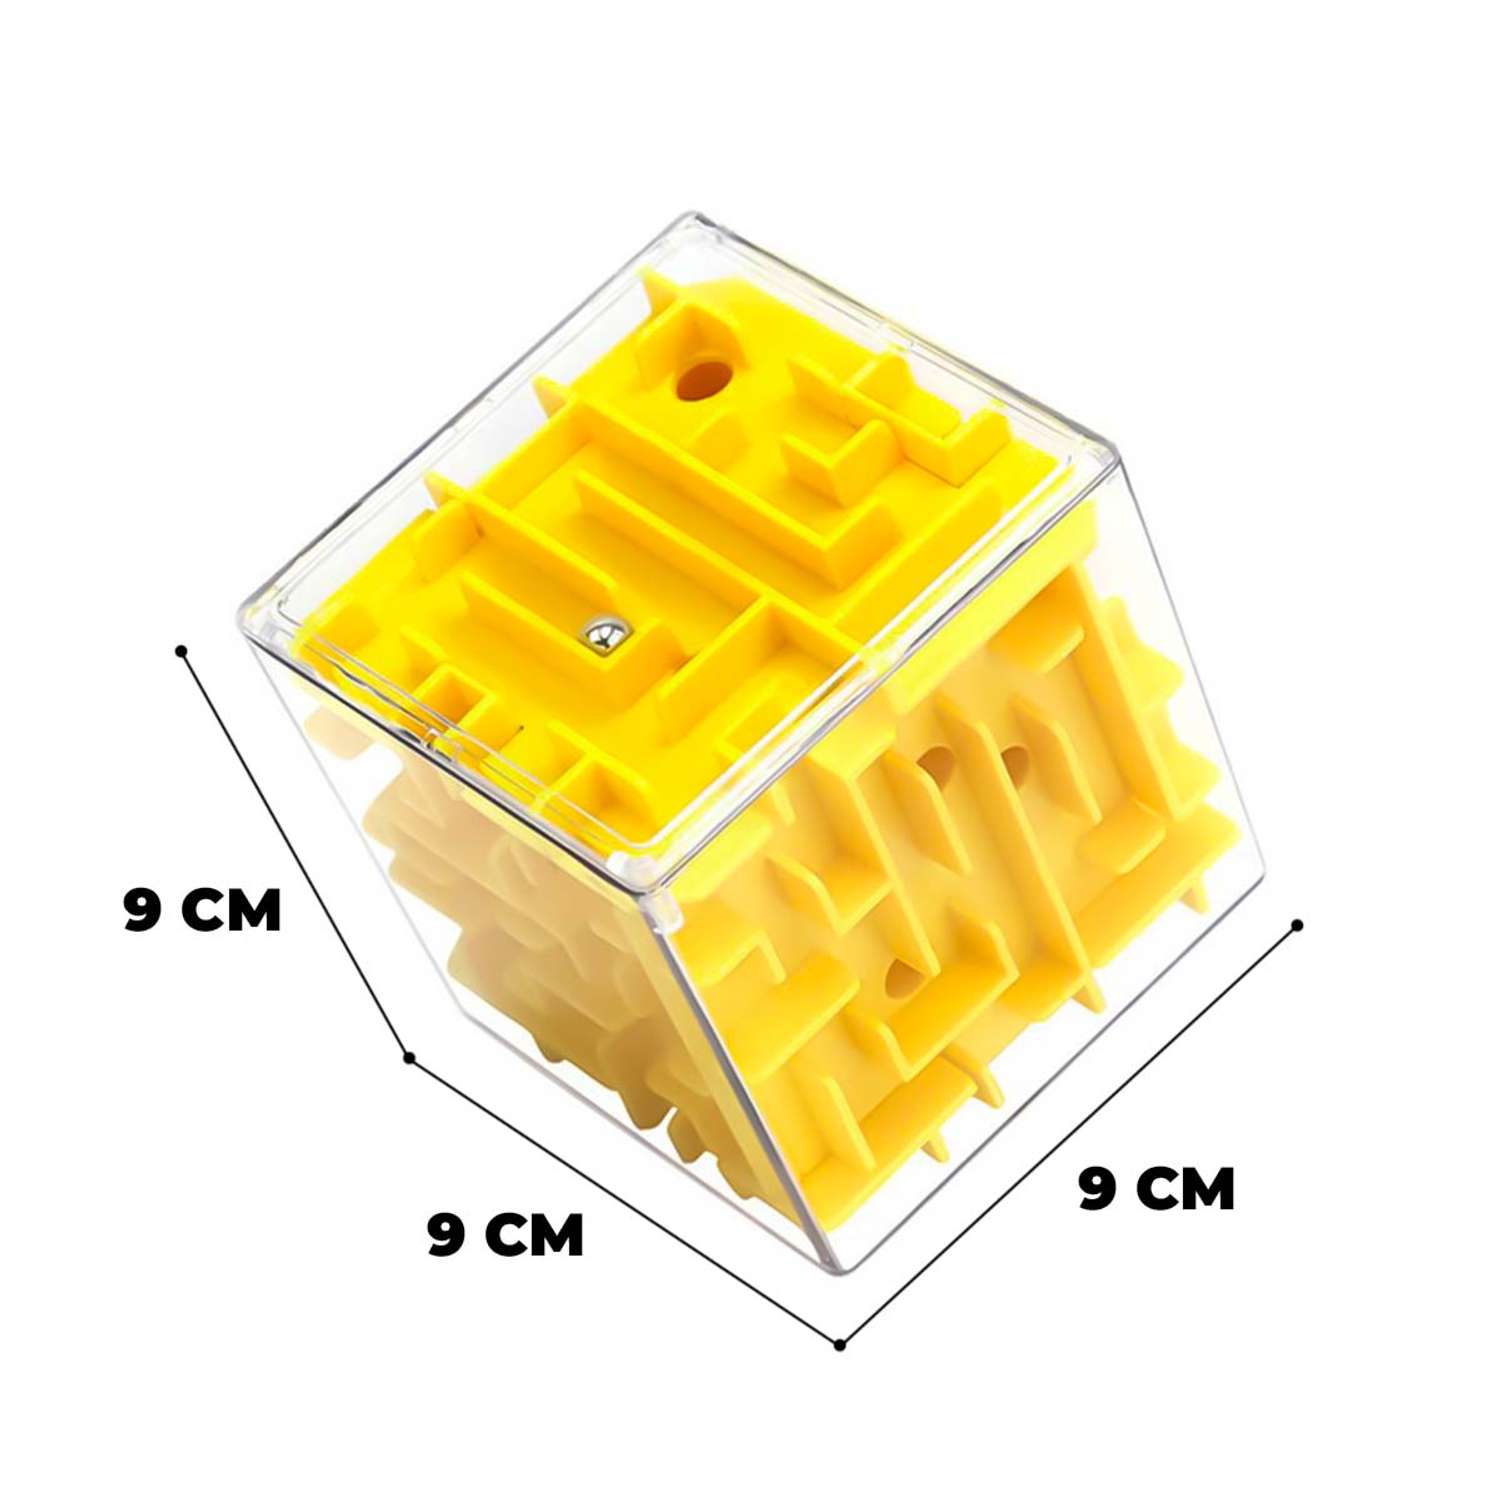 Головоломка для детей WiMI логический куб с шариком желтый - фото 3